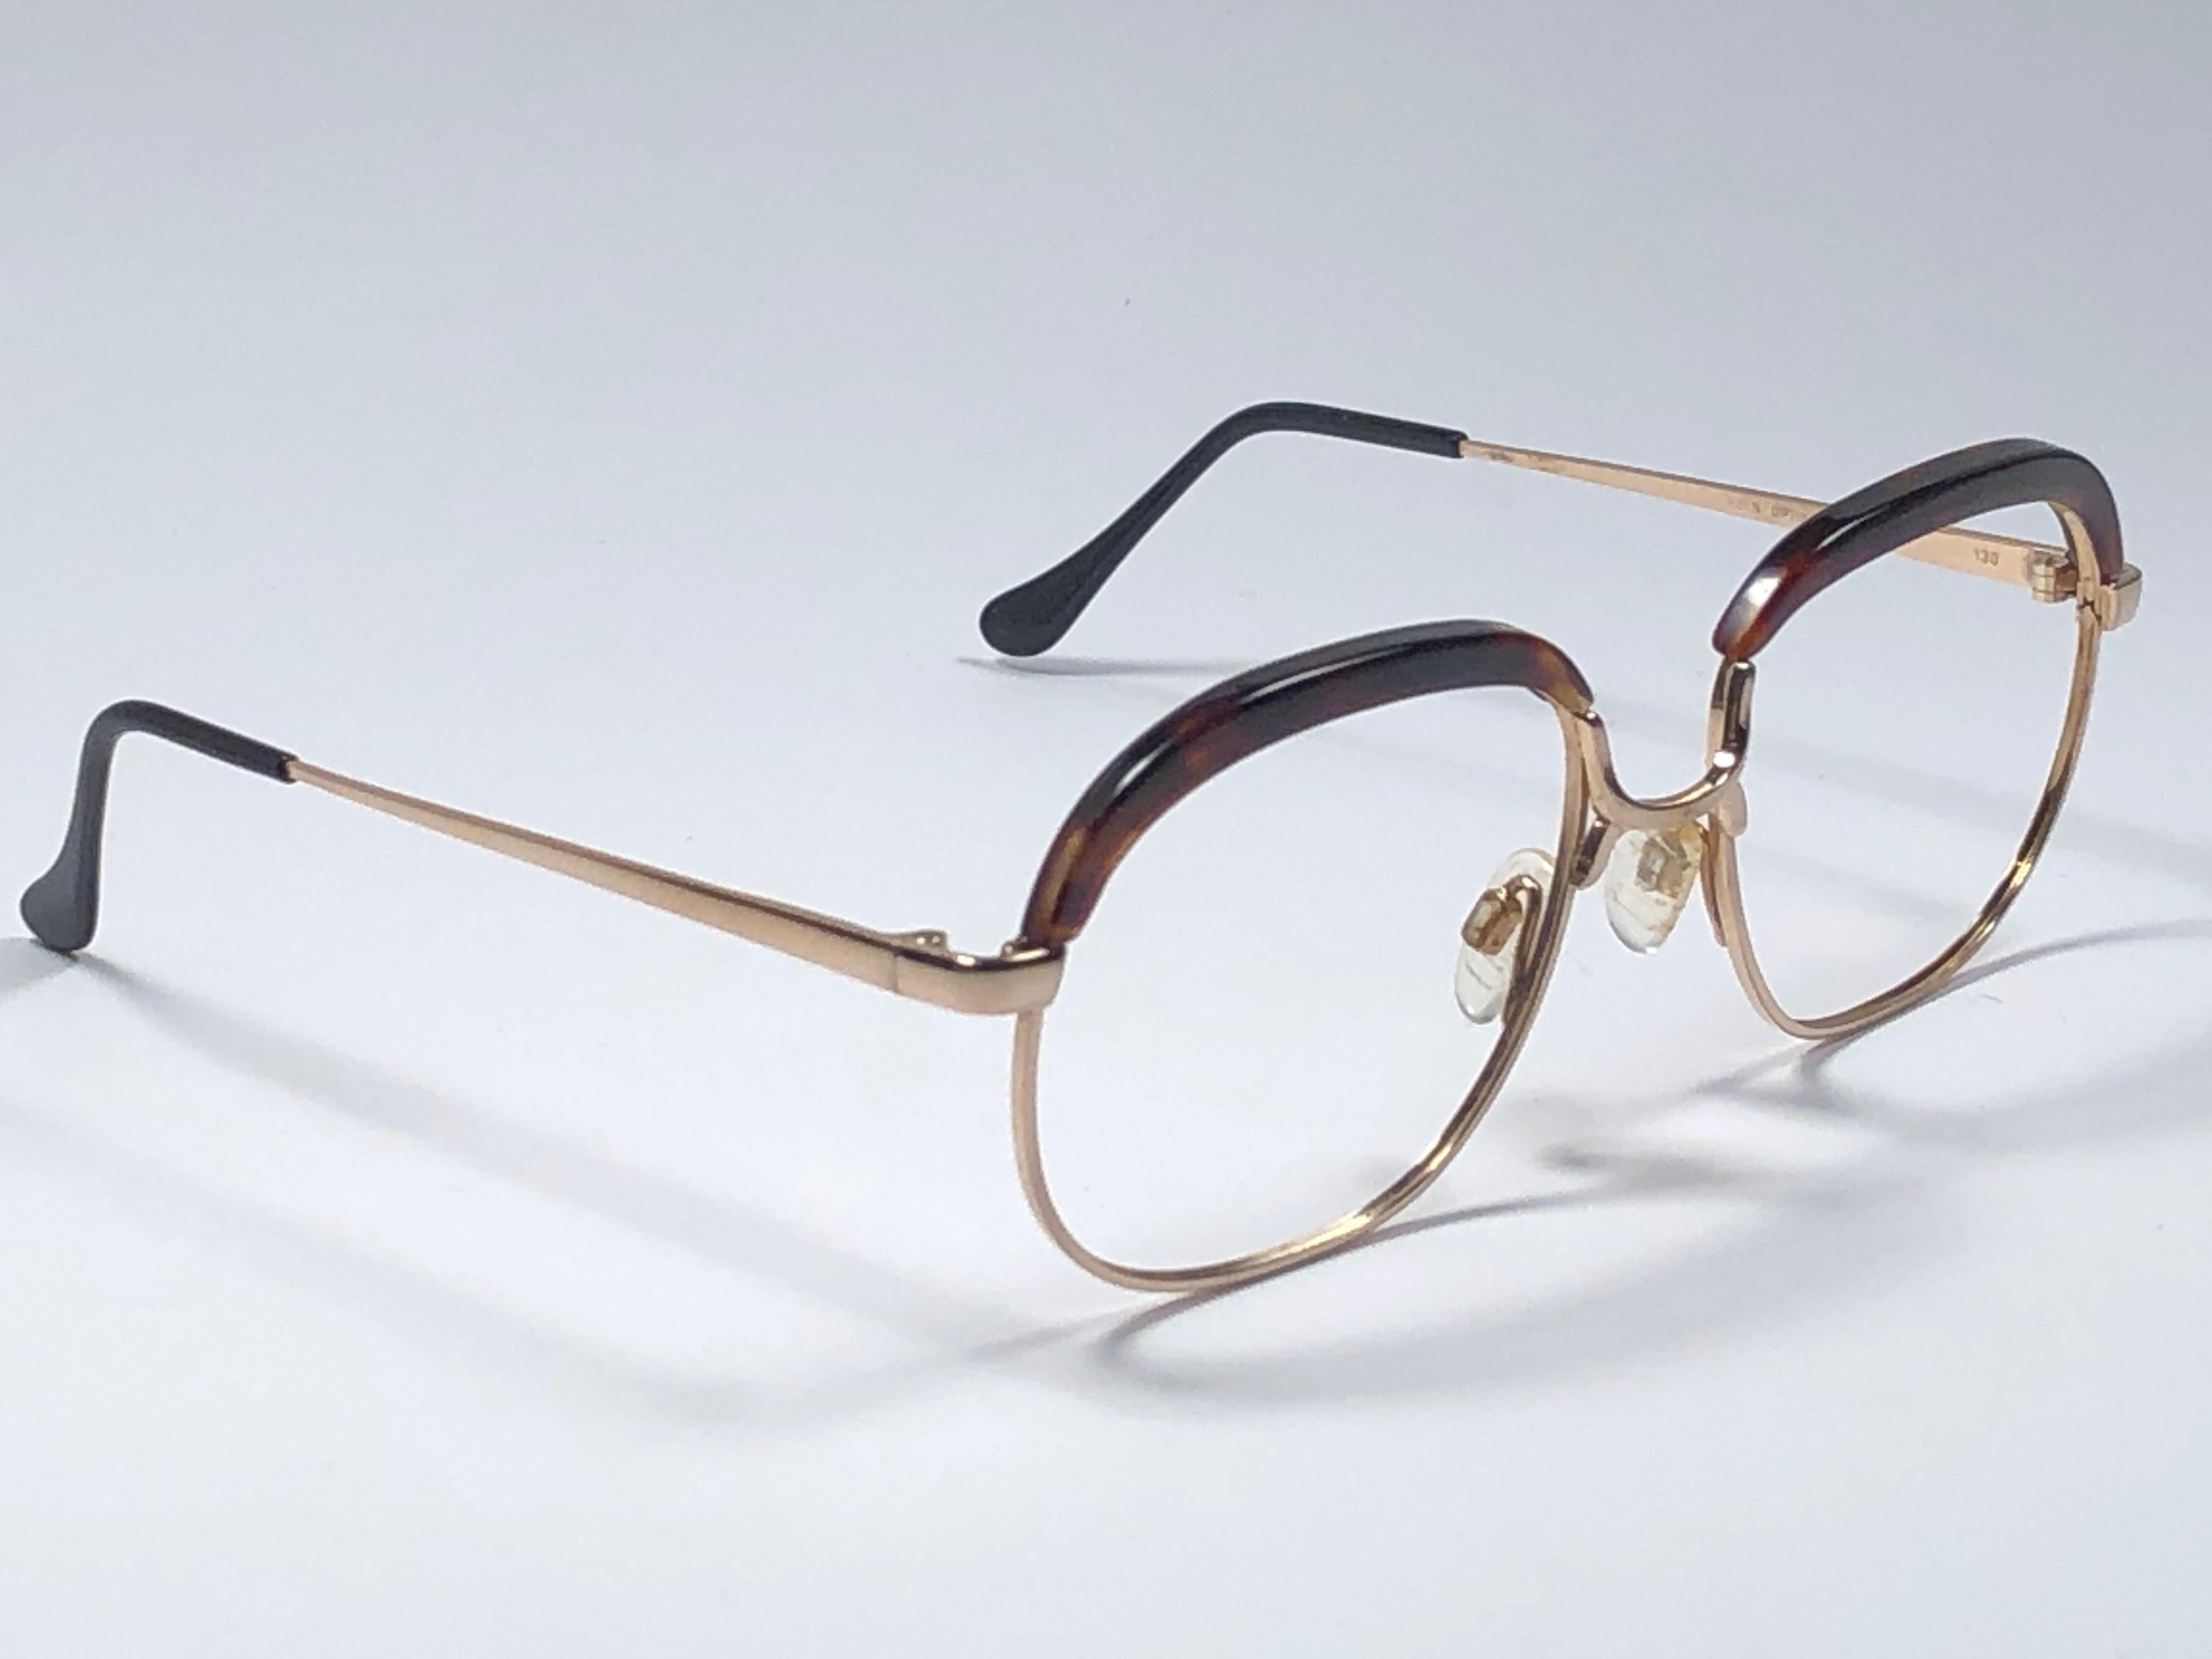 Nouveau, rare monture Köln Optik en écaille de tortue véritable et en combinaison avec de l'or. 

Convient à l'utilisation de lunettes de prescription. 

Veuillez noter que cet article a près de 40 ans et qu'il peut présenter des traces de stockage.